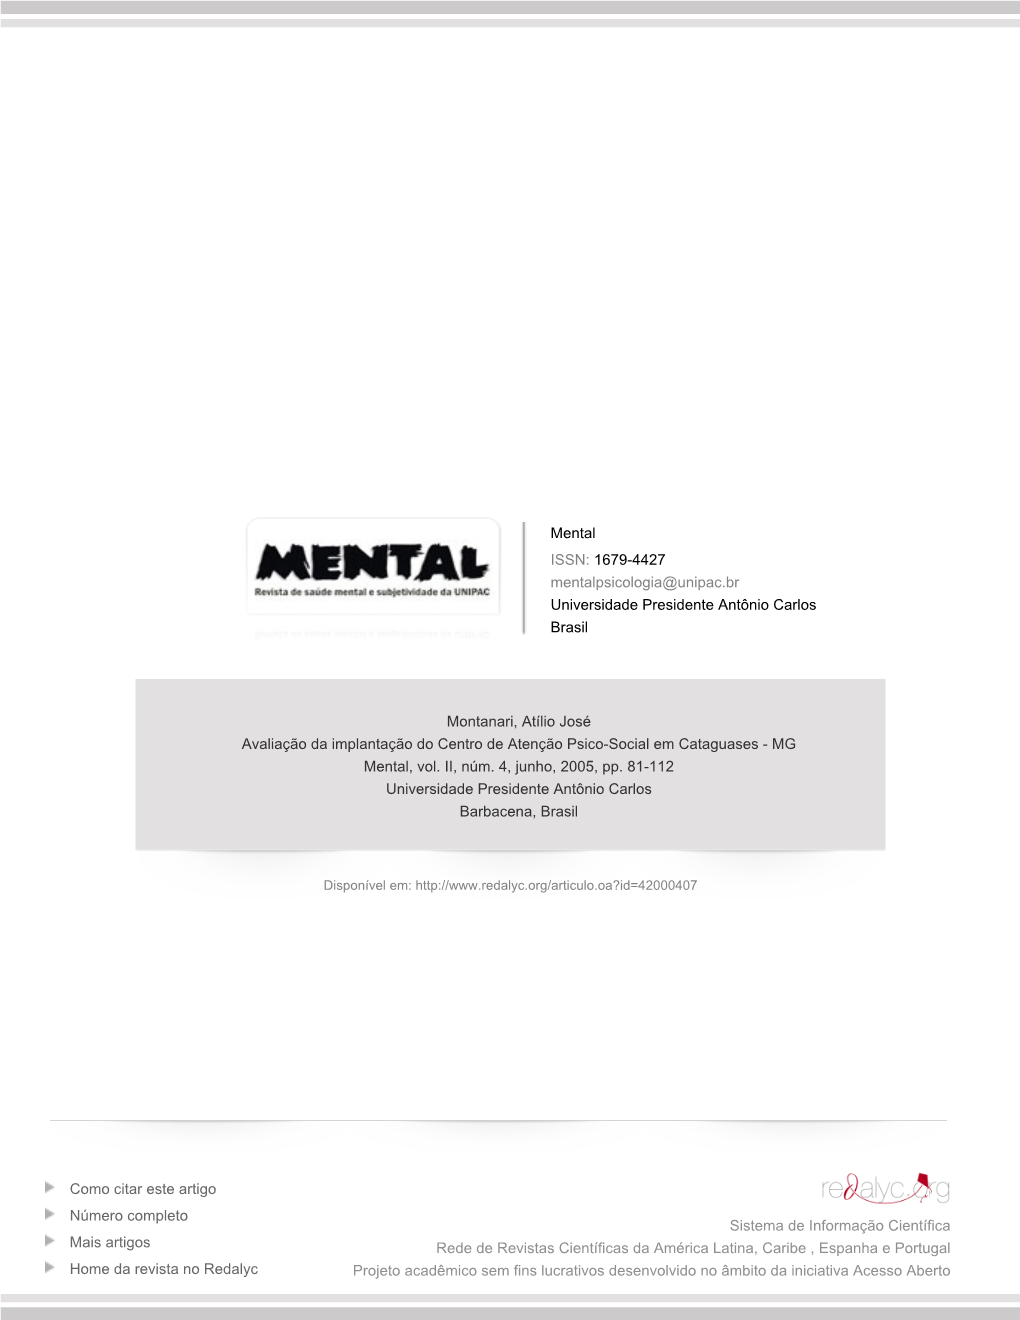 Avaliação Da Implantação Do Centro De Atenção Psico-Social Em Cataguases - MG Mental, Vol